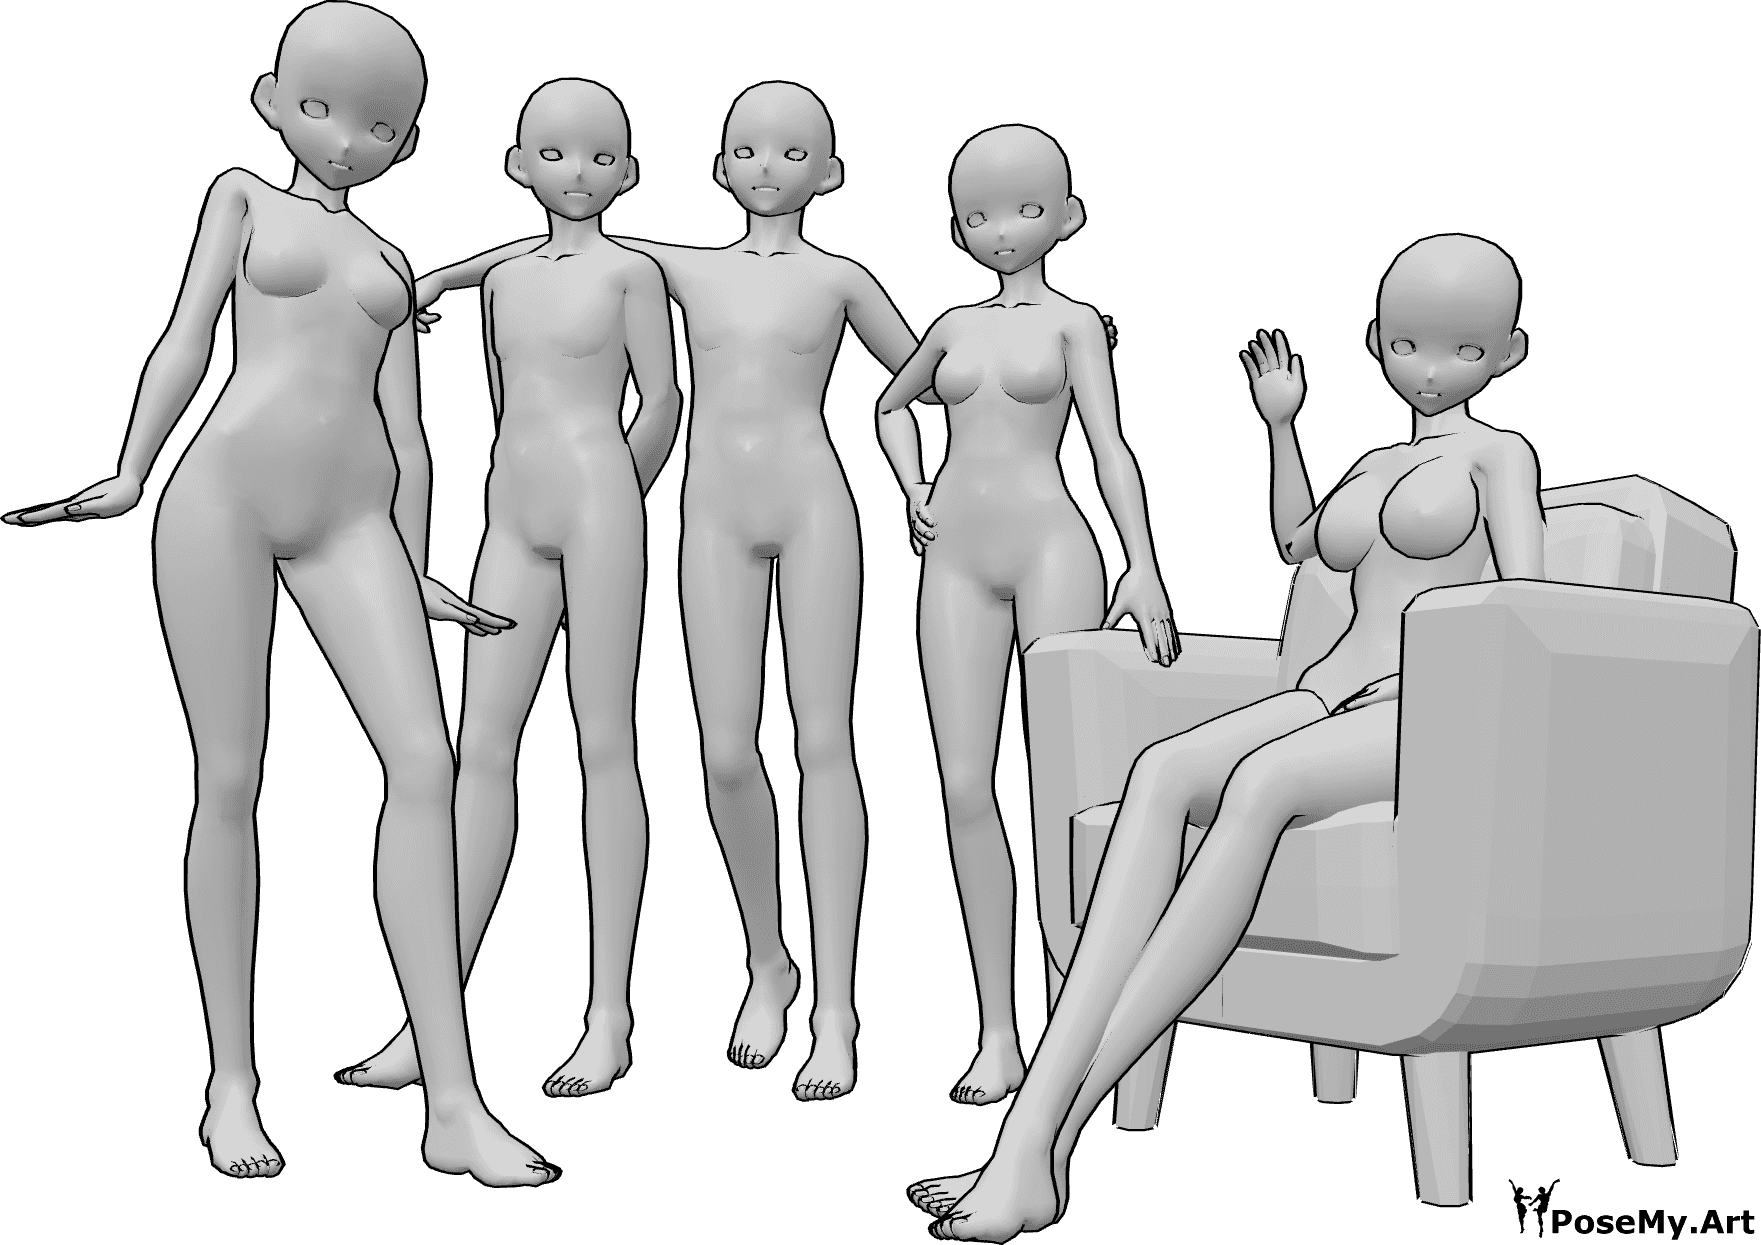 Référence des poses- Pose d'un groupe d'anime - Groupe de cinq femmes et hommes anges posant pour une photo de groupe, assis et debout.